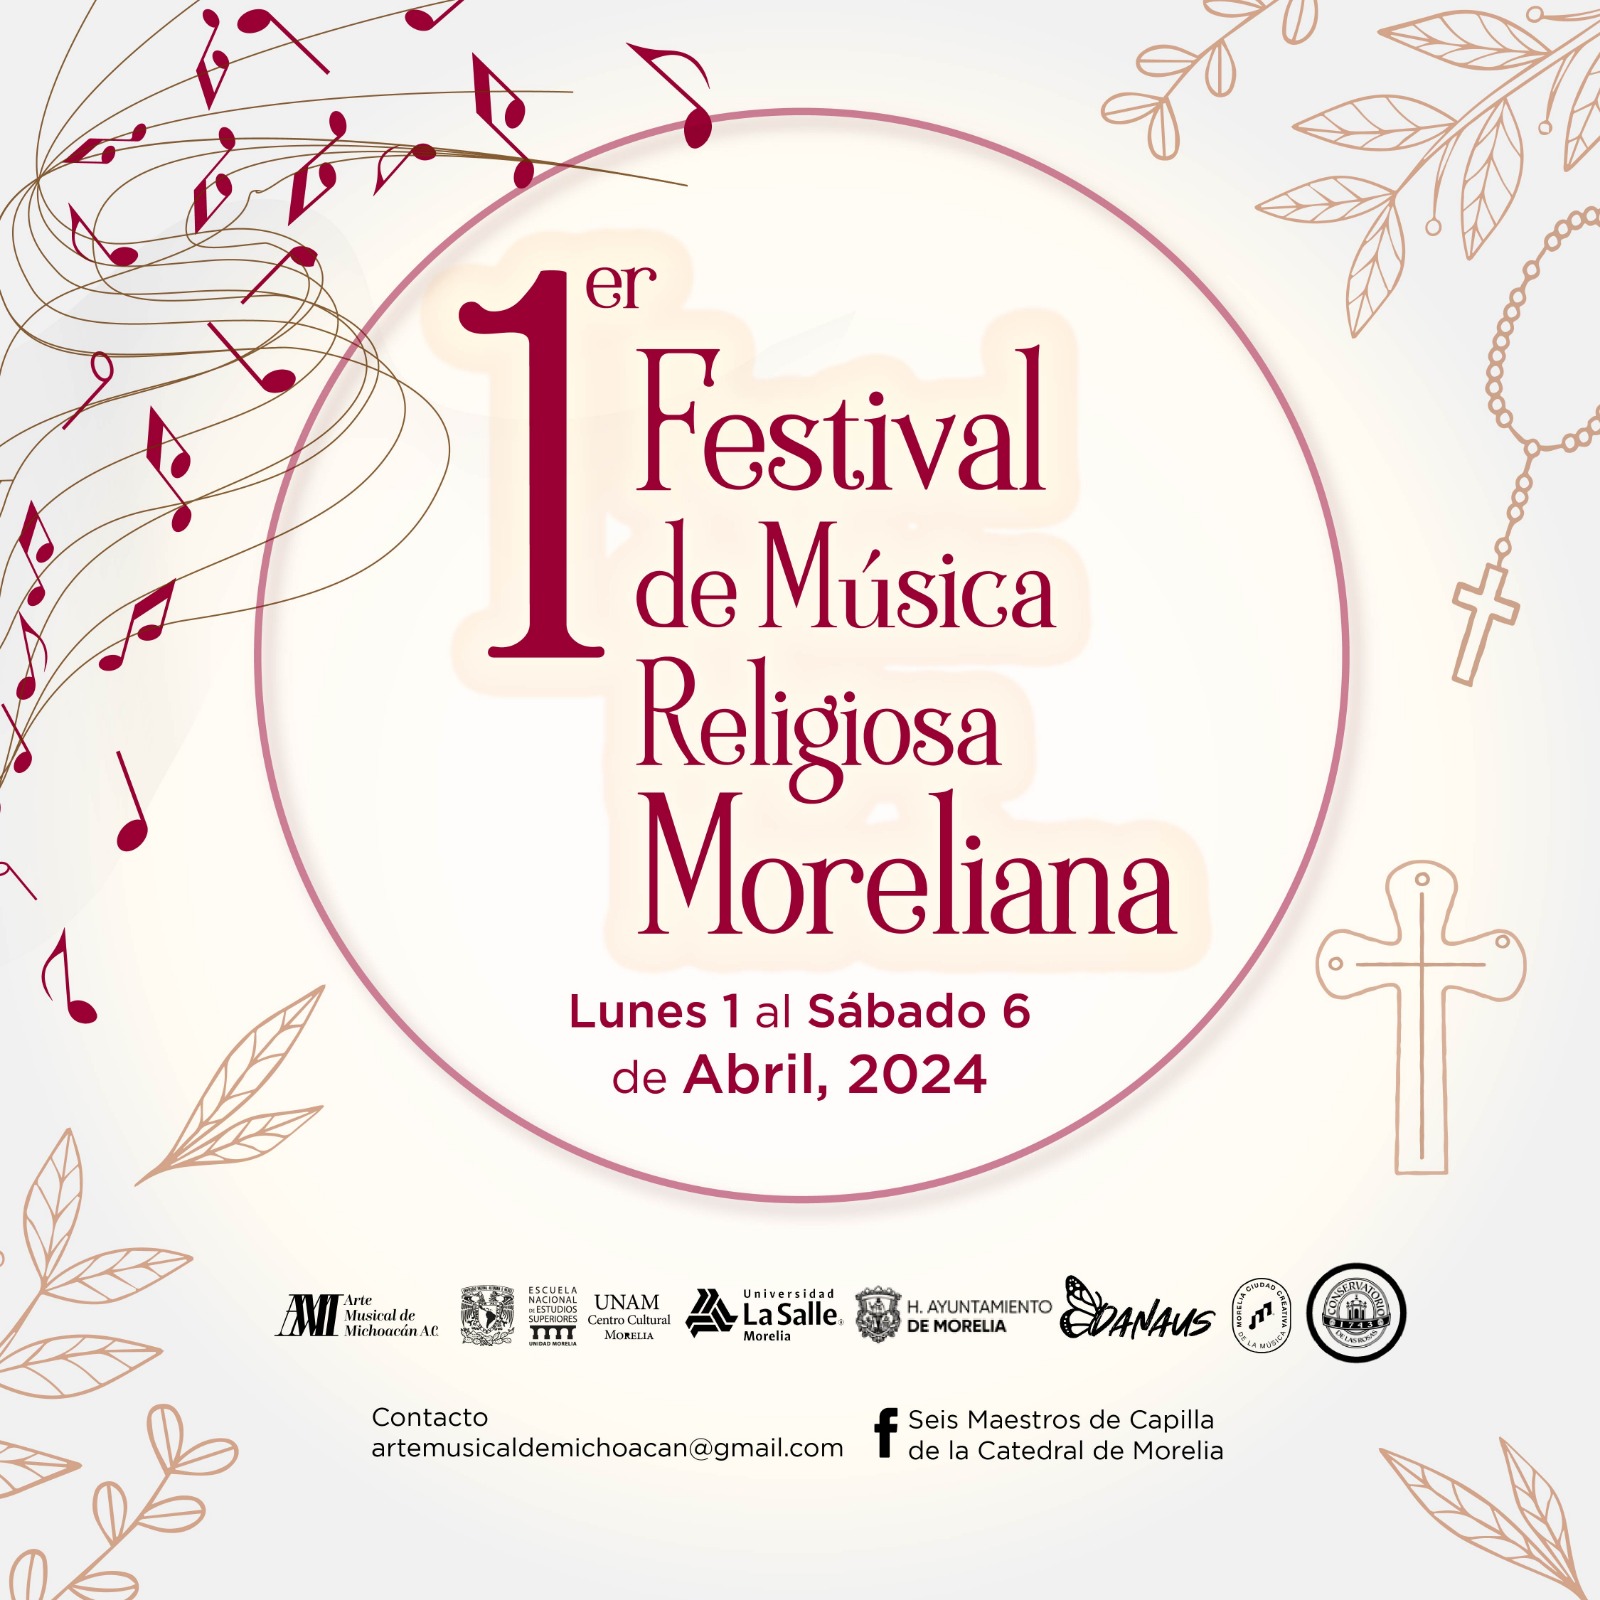 En abril llega la primera edición del Festival de Música Religiosa Moreliana